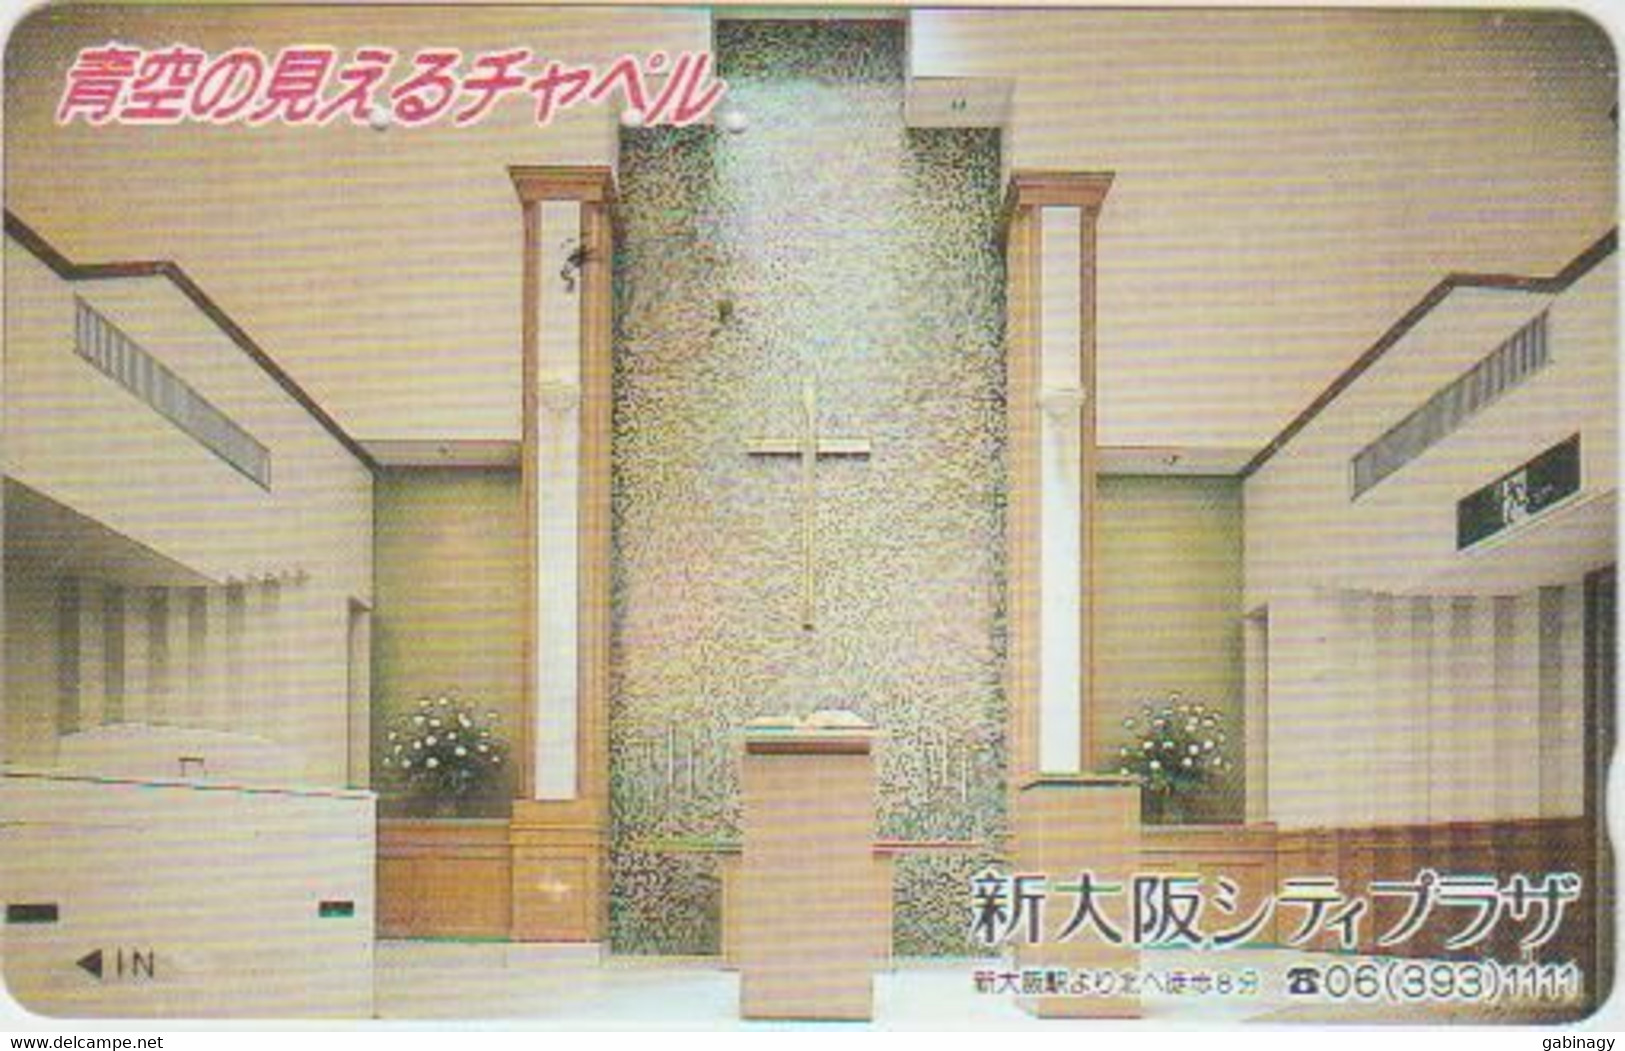 RELIGION - JAPAN-044 - CHURCH - 110-011 - Cultural